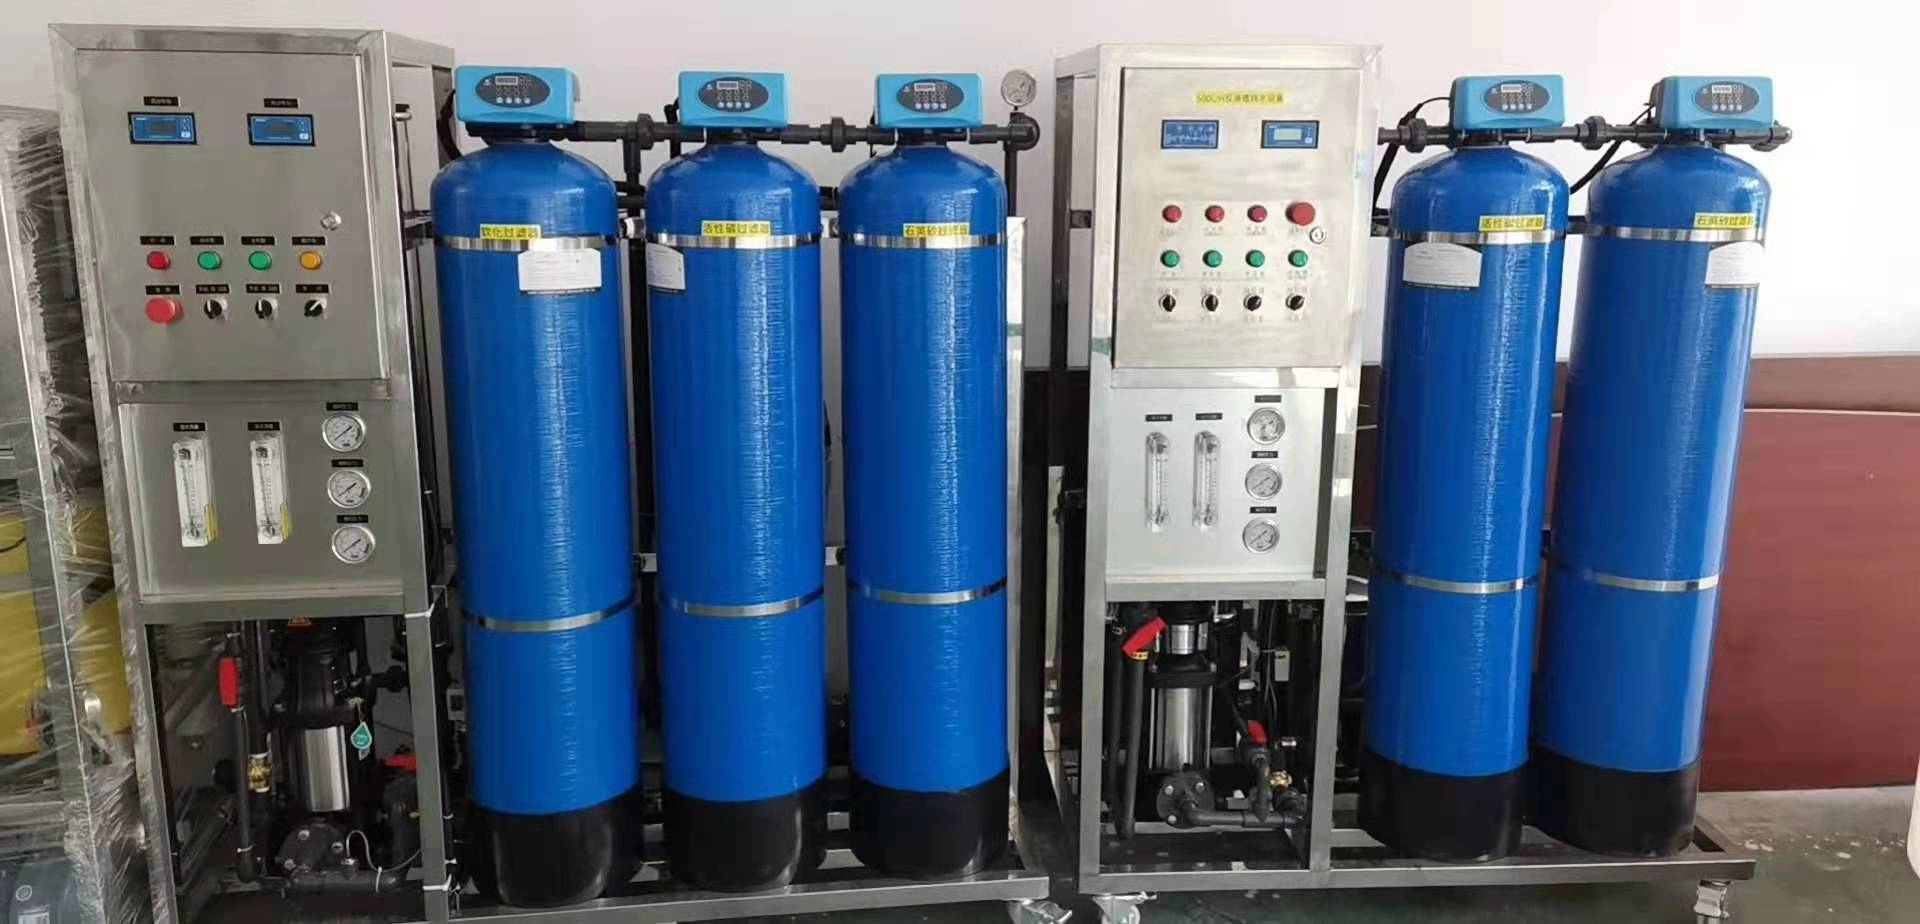 Nouvel équipement de traitement de l'eau par osmose inverse de système d'osmose inverse de purification industrielle à 99,8% amélioré